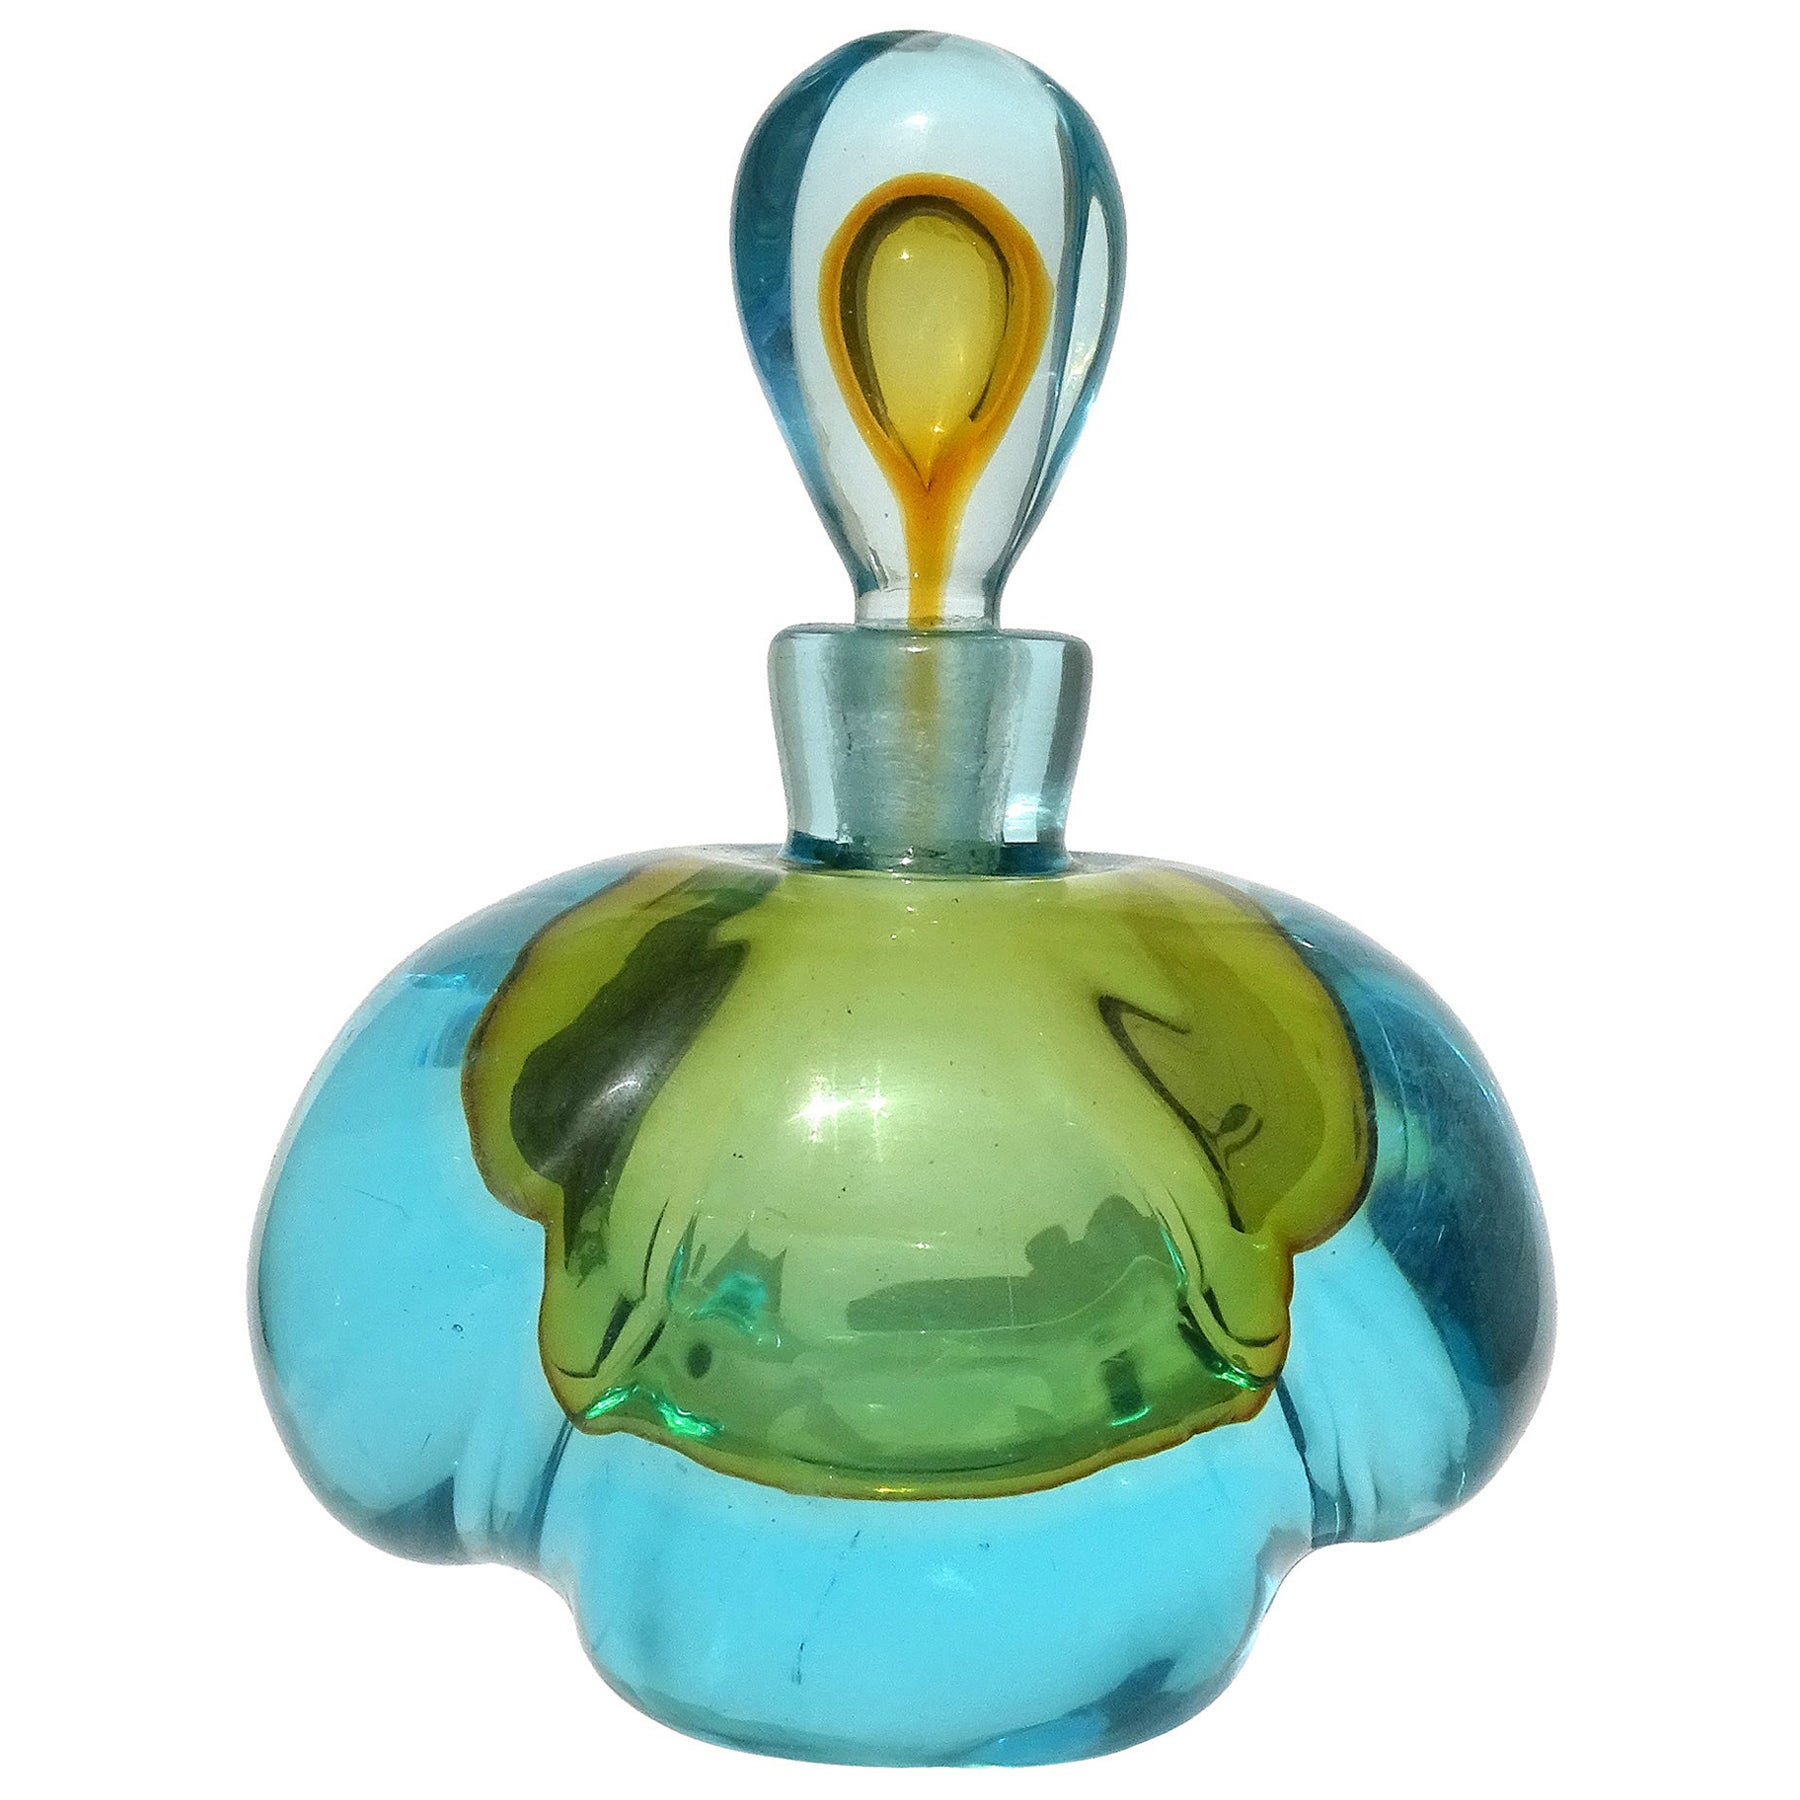 Barbini Murano Sommerso Blue Orange Italian Art Glass Perfume Cologne Bottle